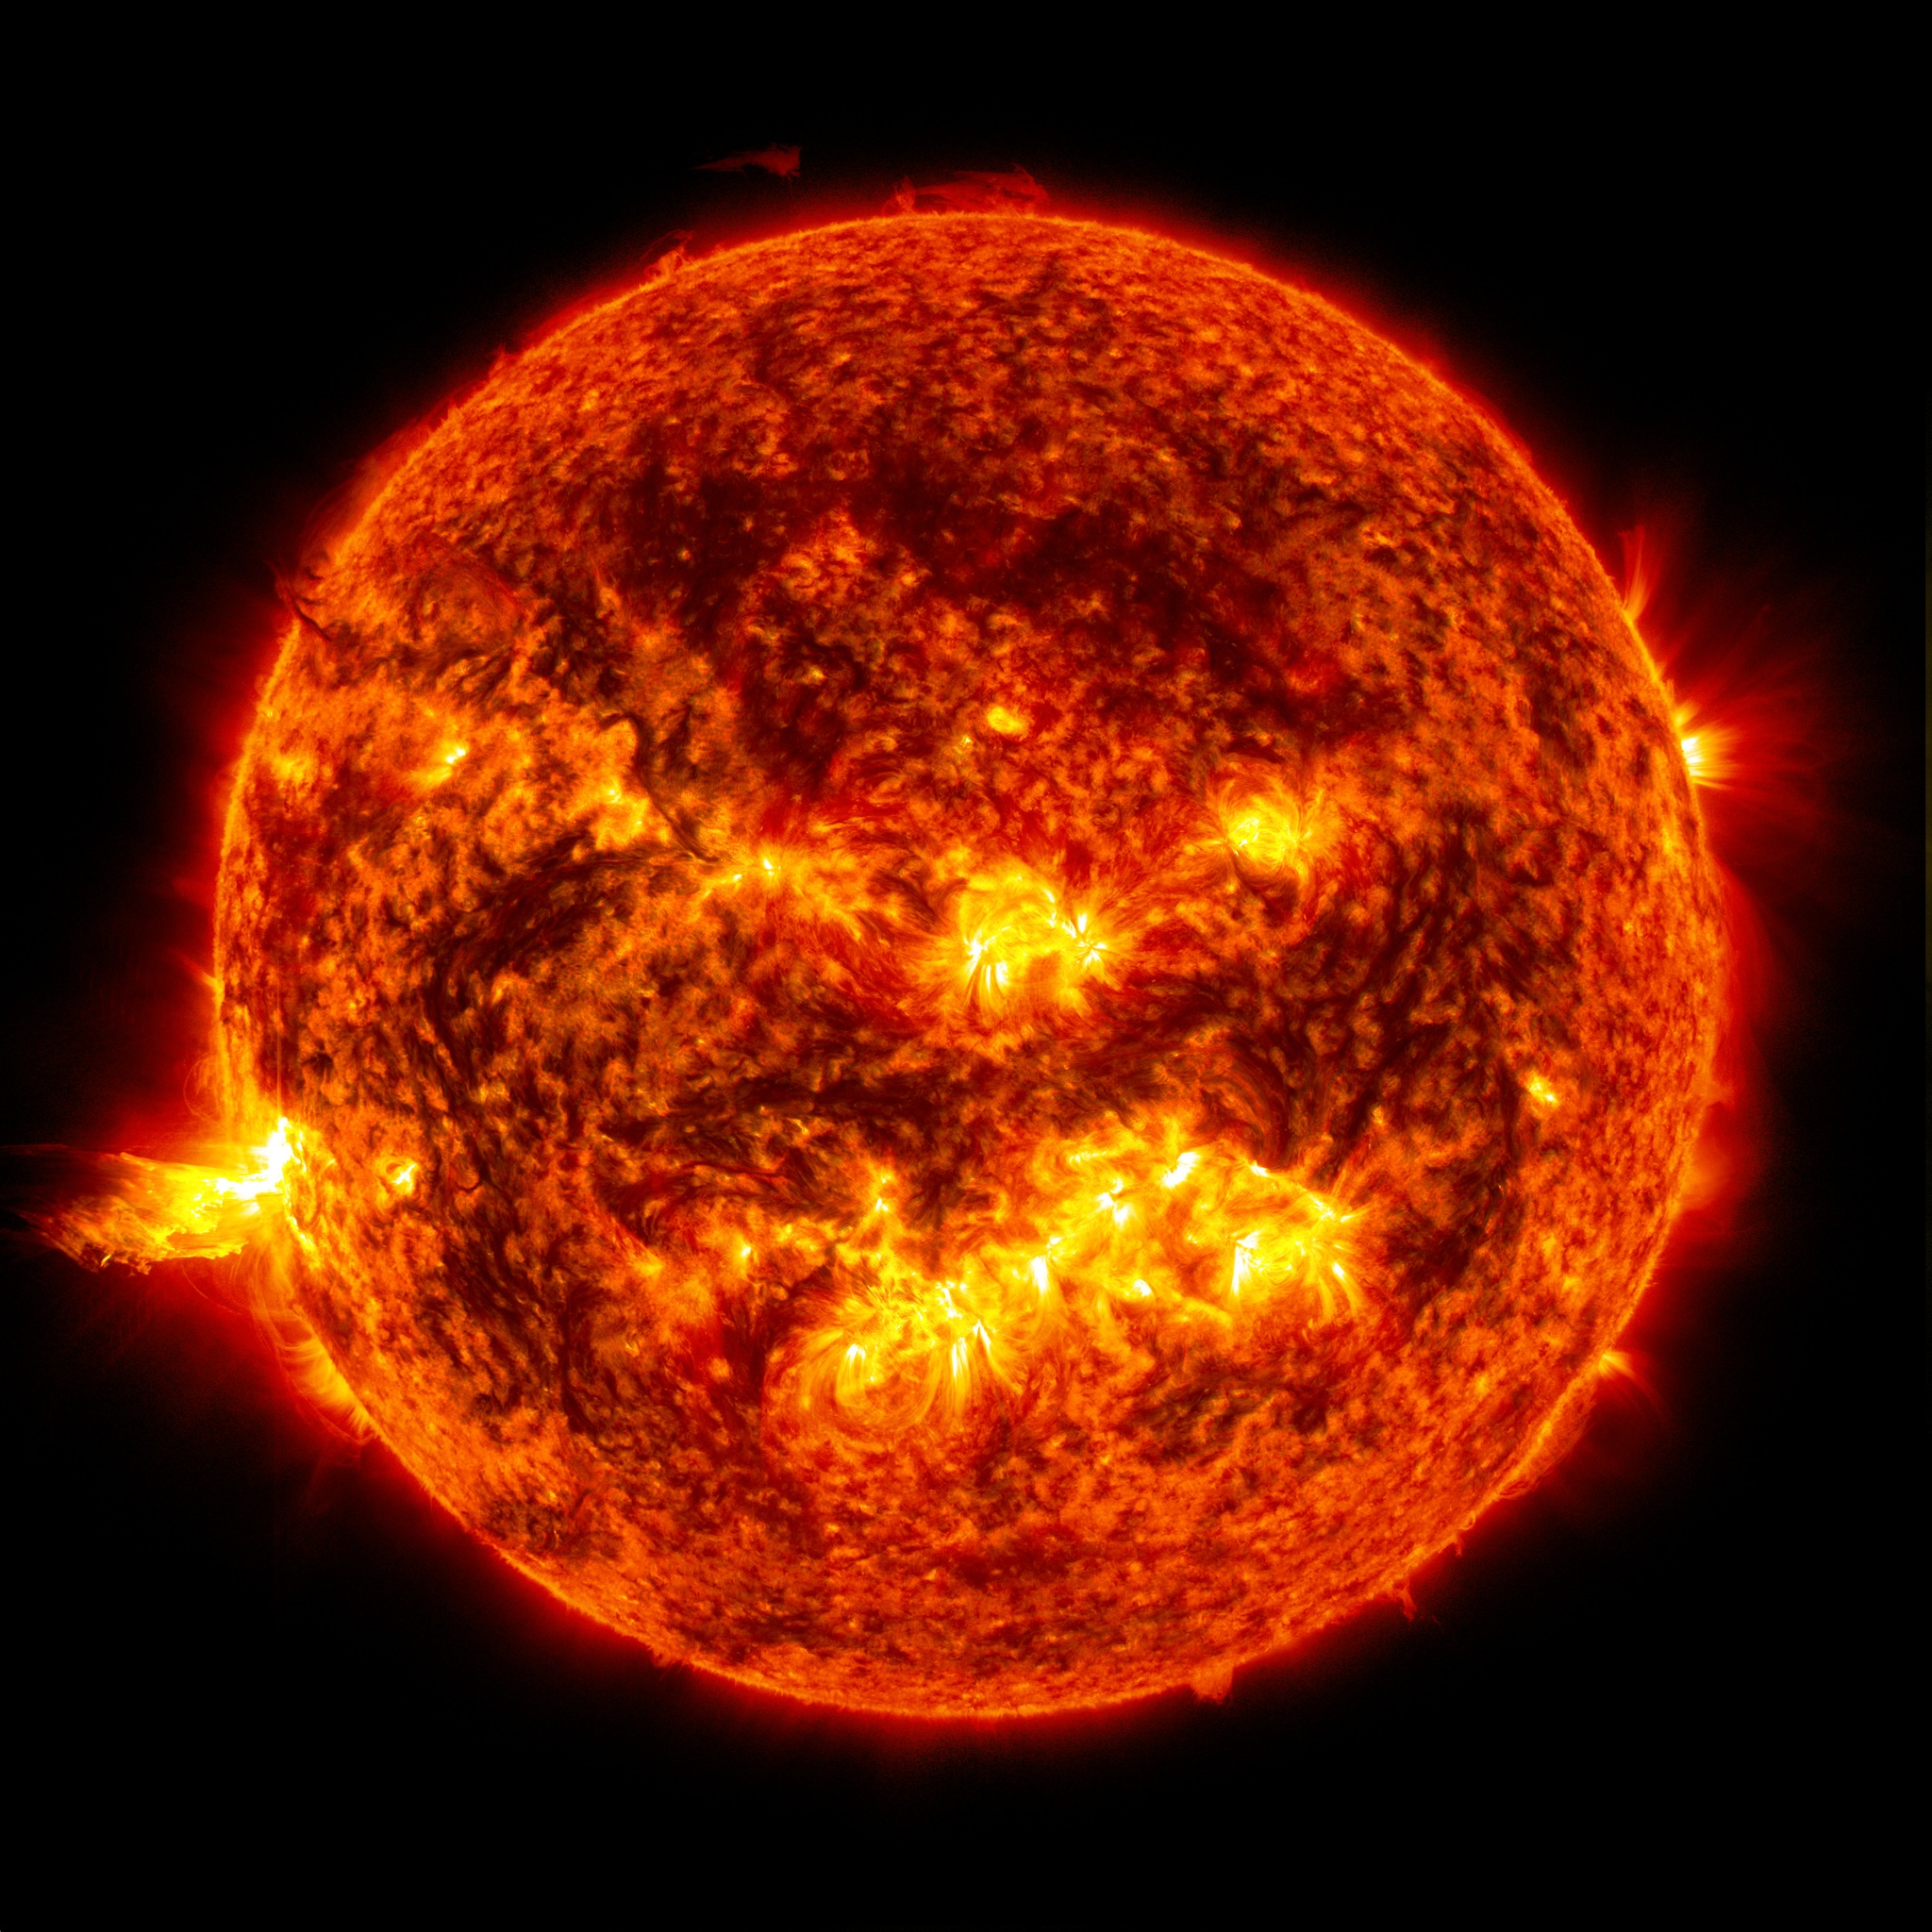 La température du Soleil varie de 15 millions de degrés Celsius en son cœur à près de 6.000 °C à sa surface et 3.500 °C seulement dans les taches solaires. © Nasa, SDO, AIA, Goddard Space Flight Center